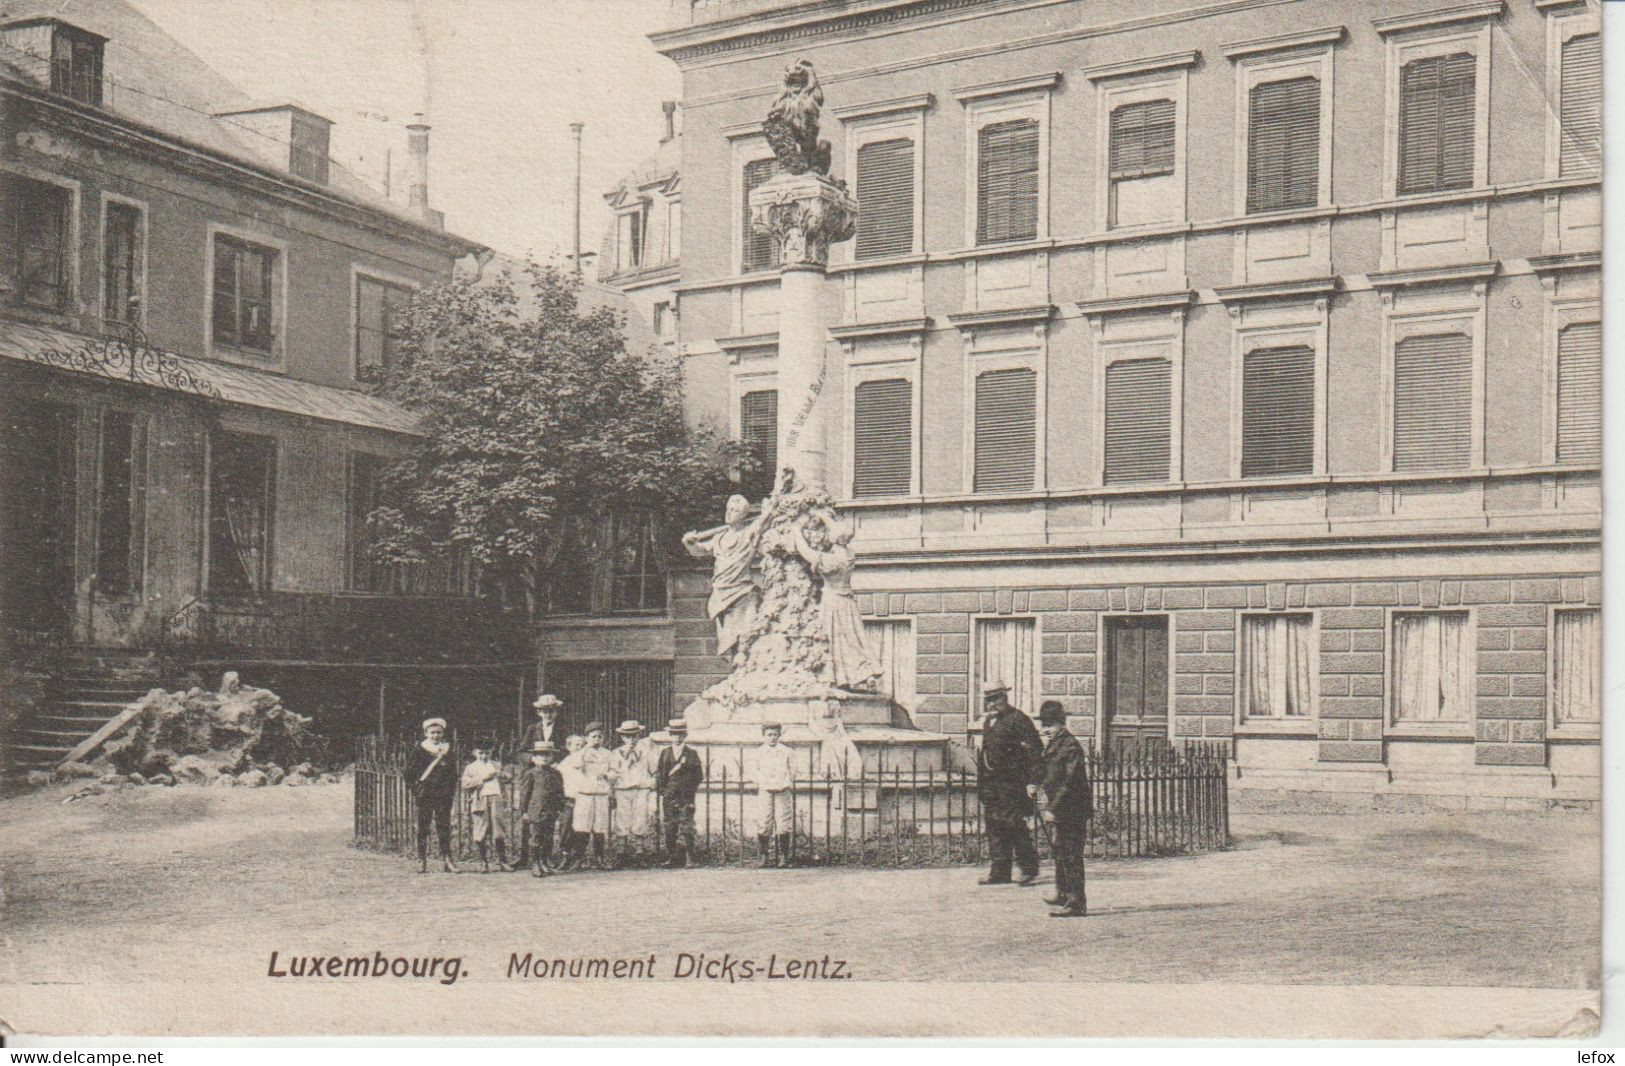 LUXEMBOURG MONUMENT DICKS LENTZ - Luxemburg - Stad